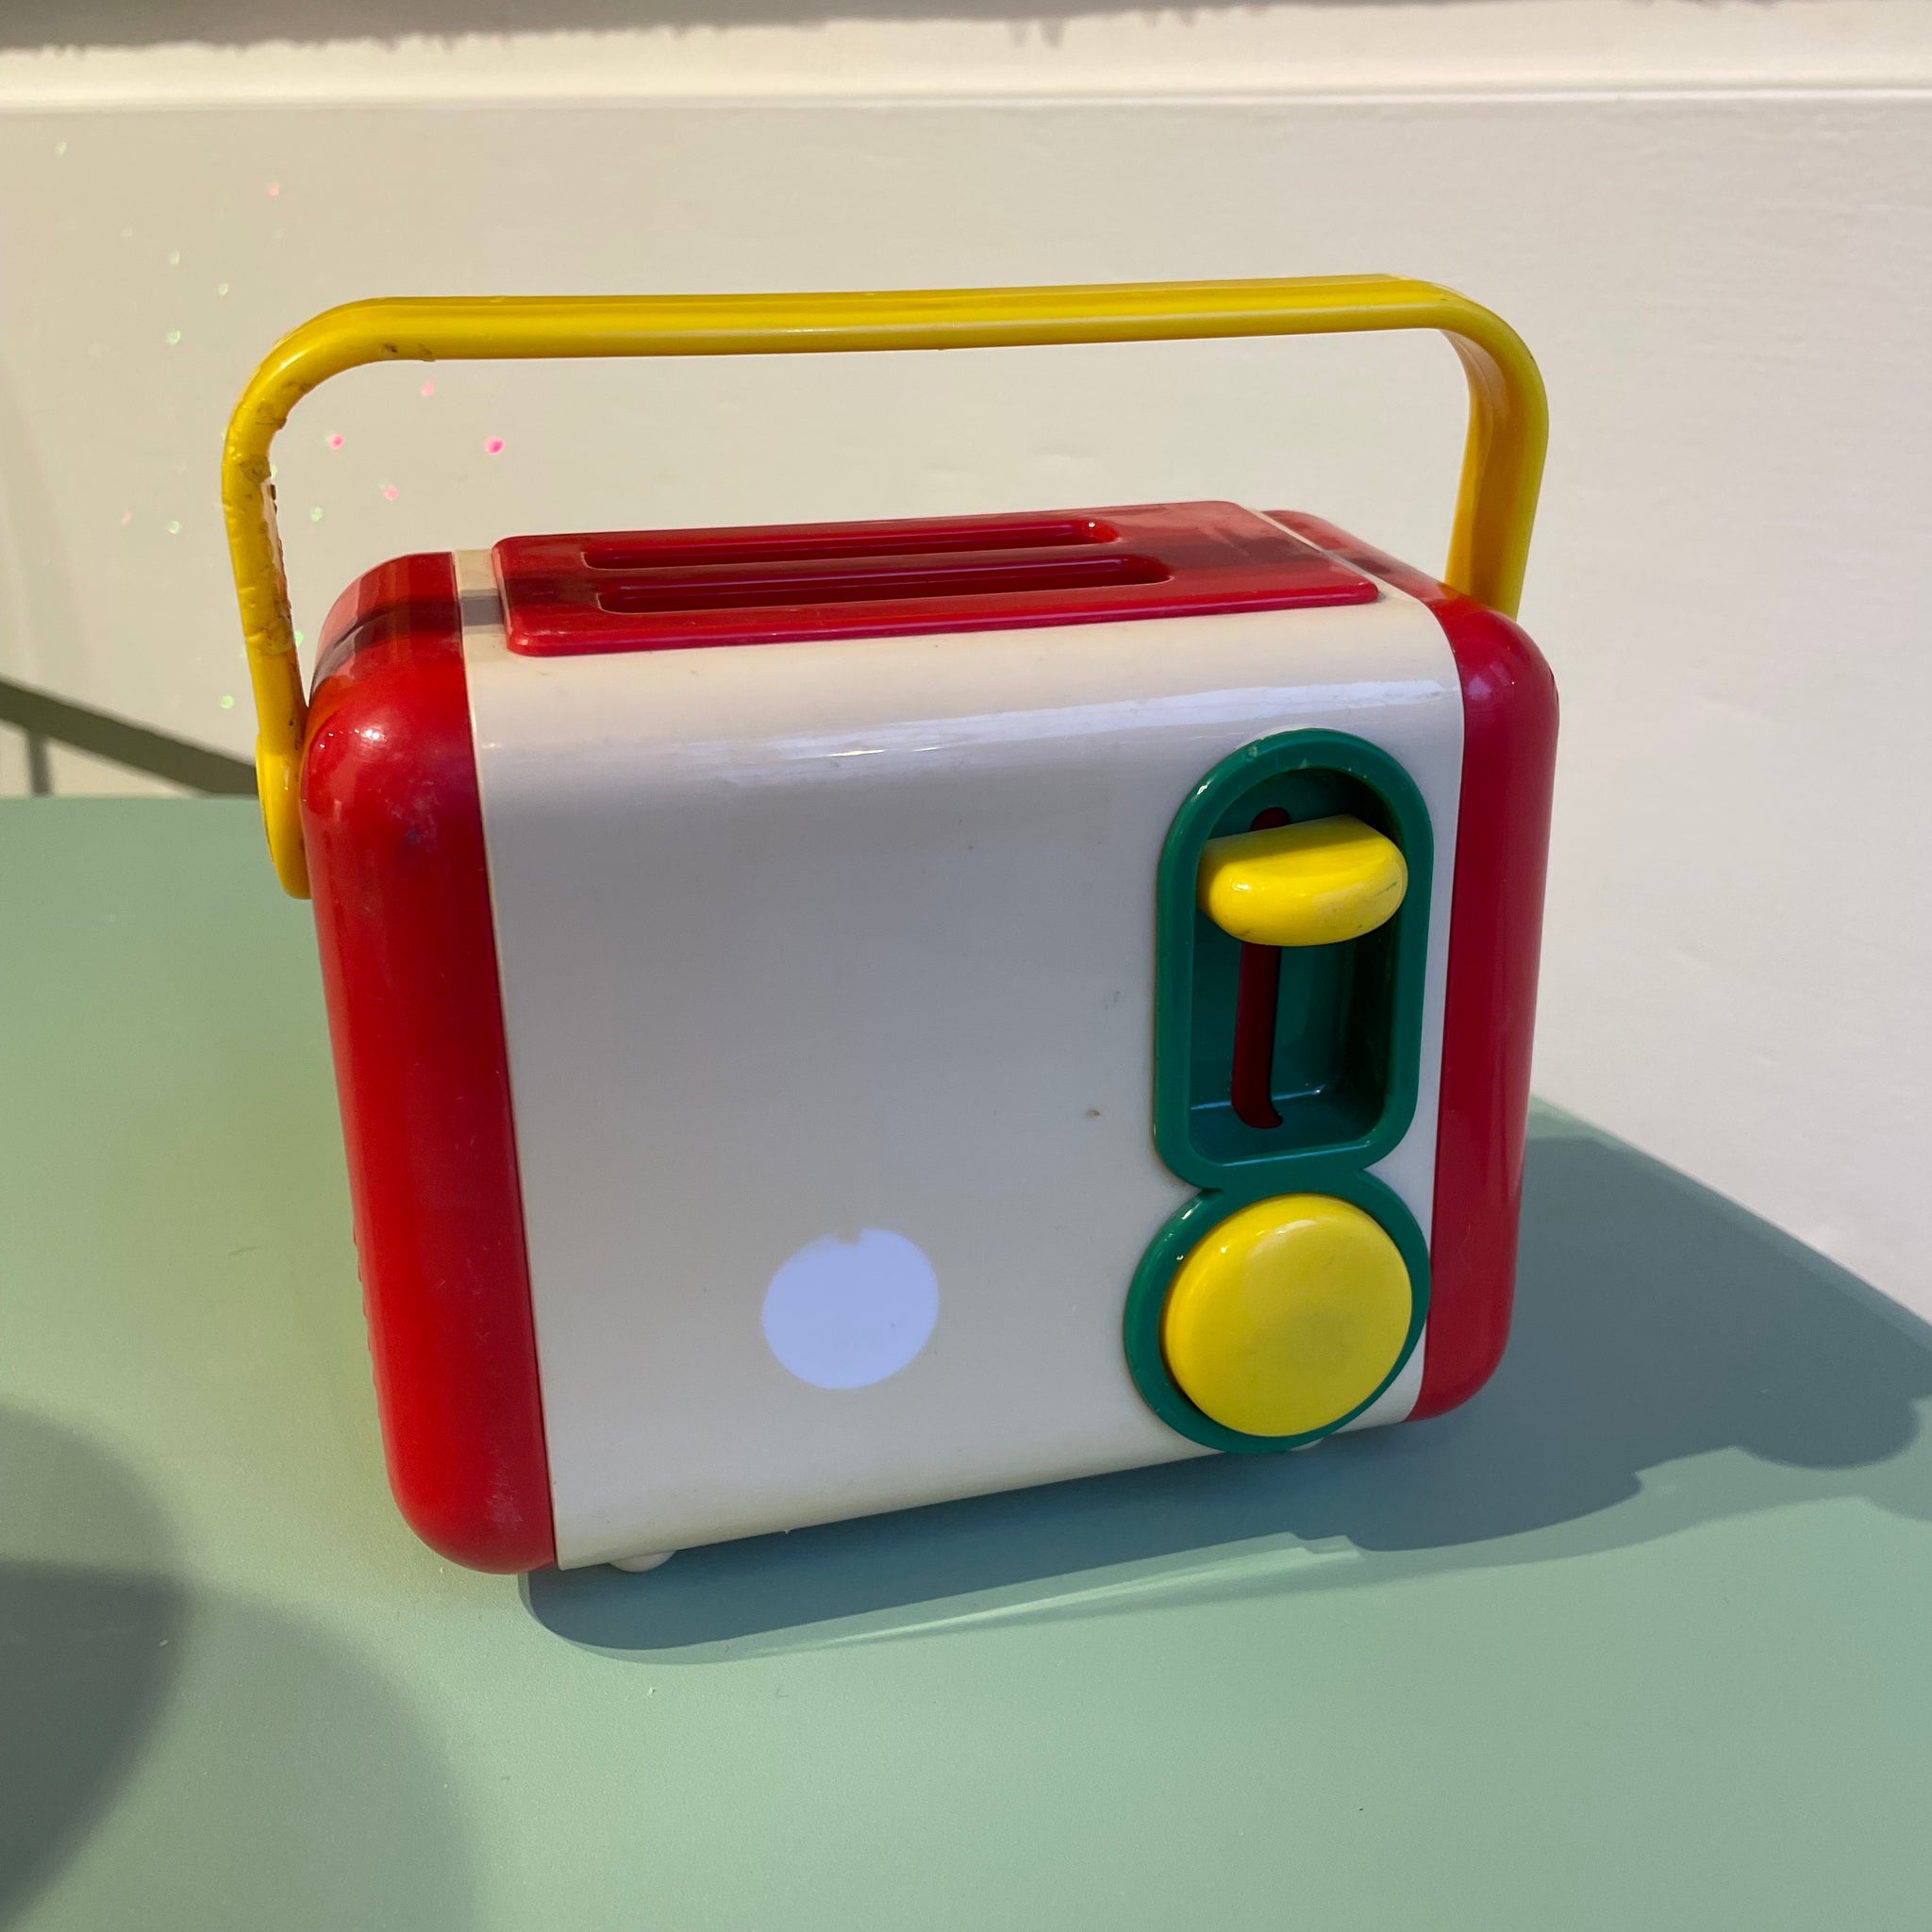 Retro Toy Toaster